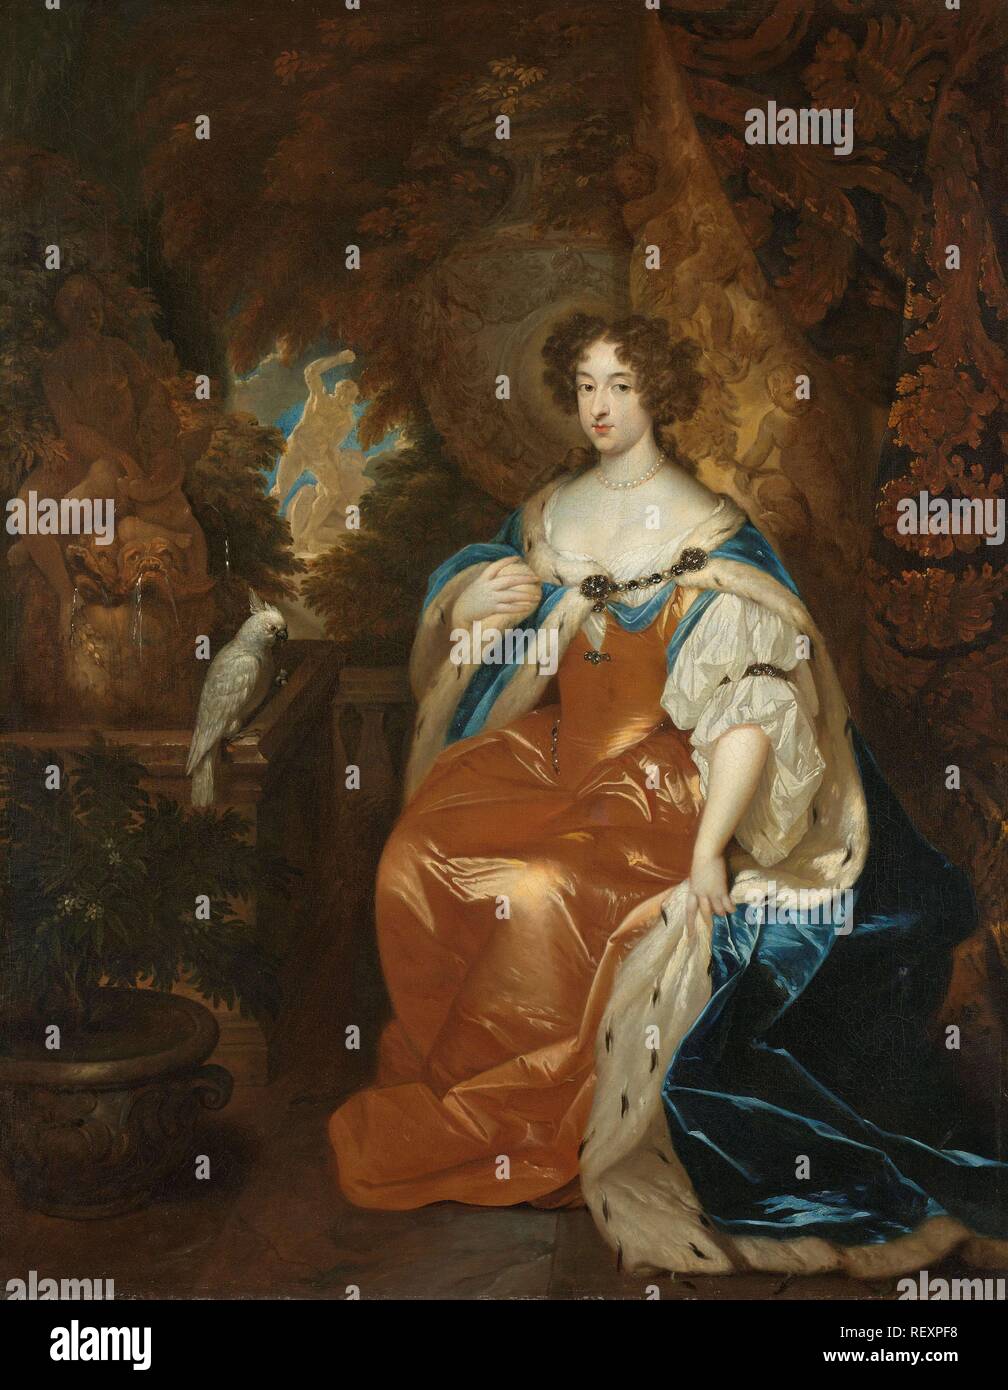 Ritratto di Maria Stuart (1662-95), moglie del principe William III. Dating: c. 1683. Misurazioni: h 80.5 cm × W 63,5 cm; d 5.5 cm. Museo: Rijksmuseum Amsterdam. Autore: Caspar Netscher. Foto Stock